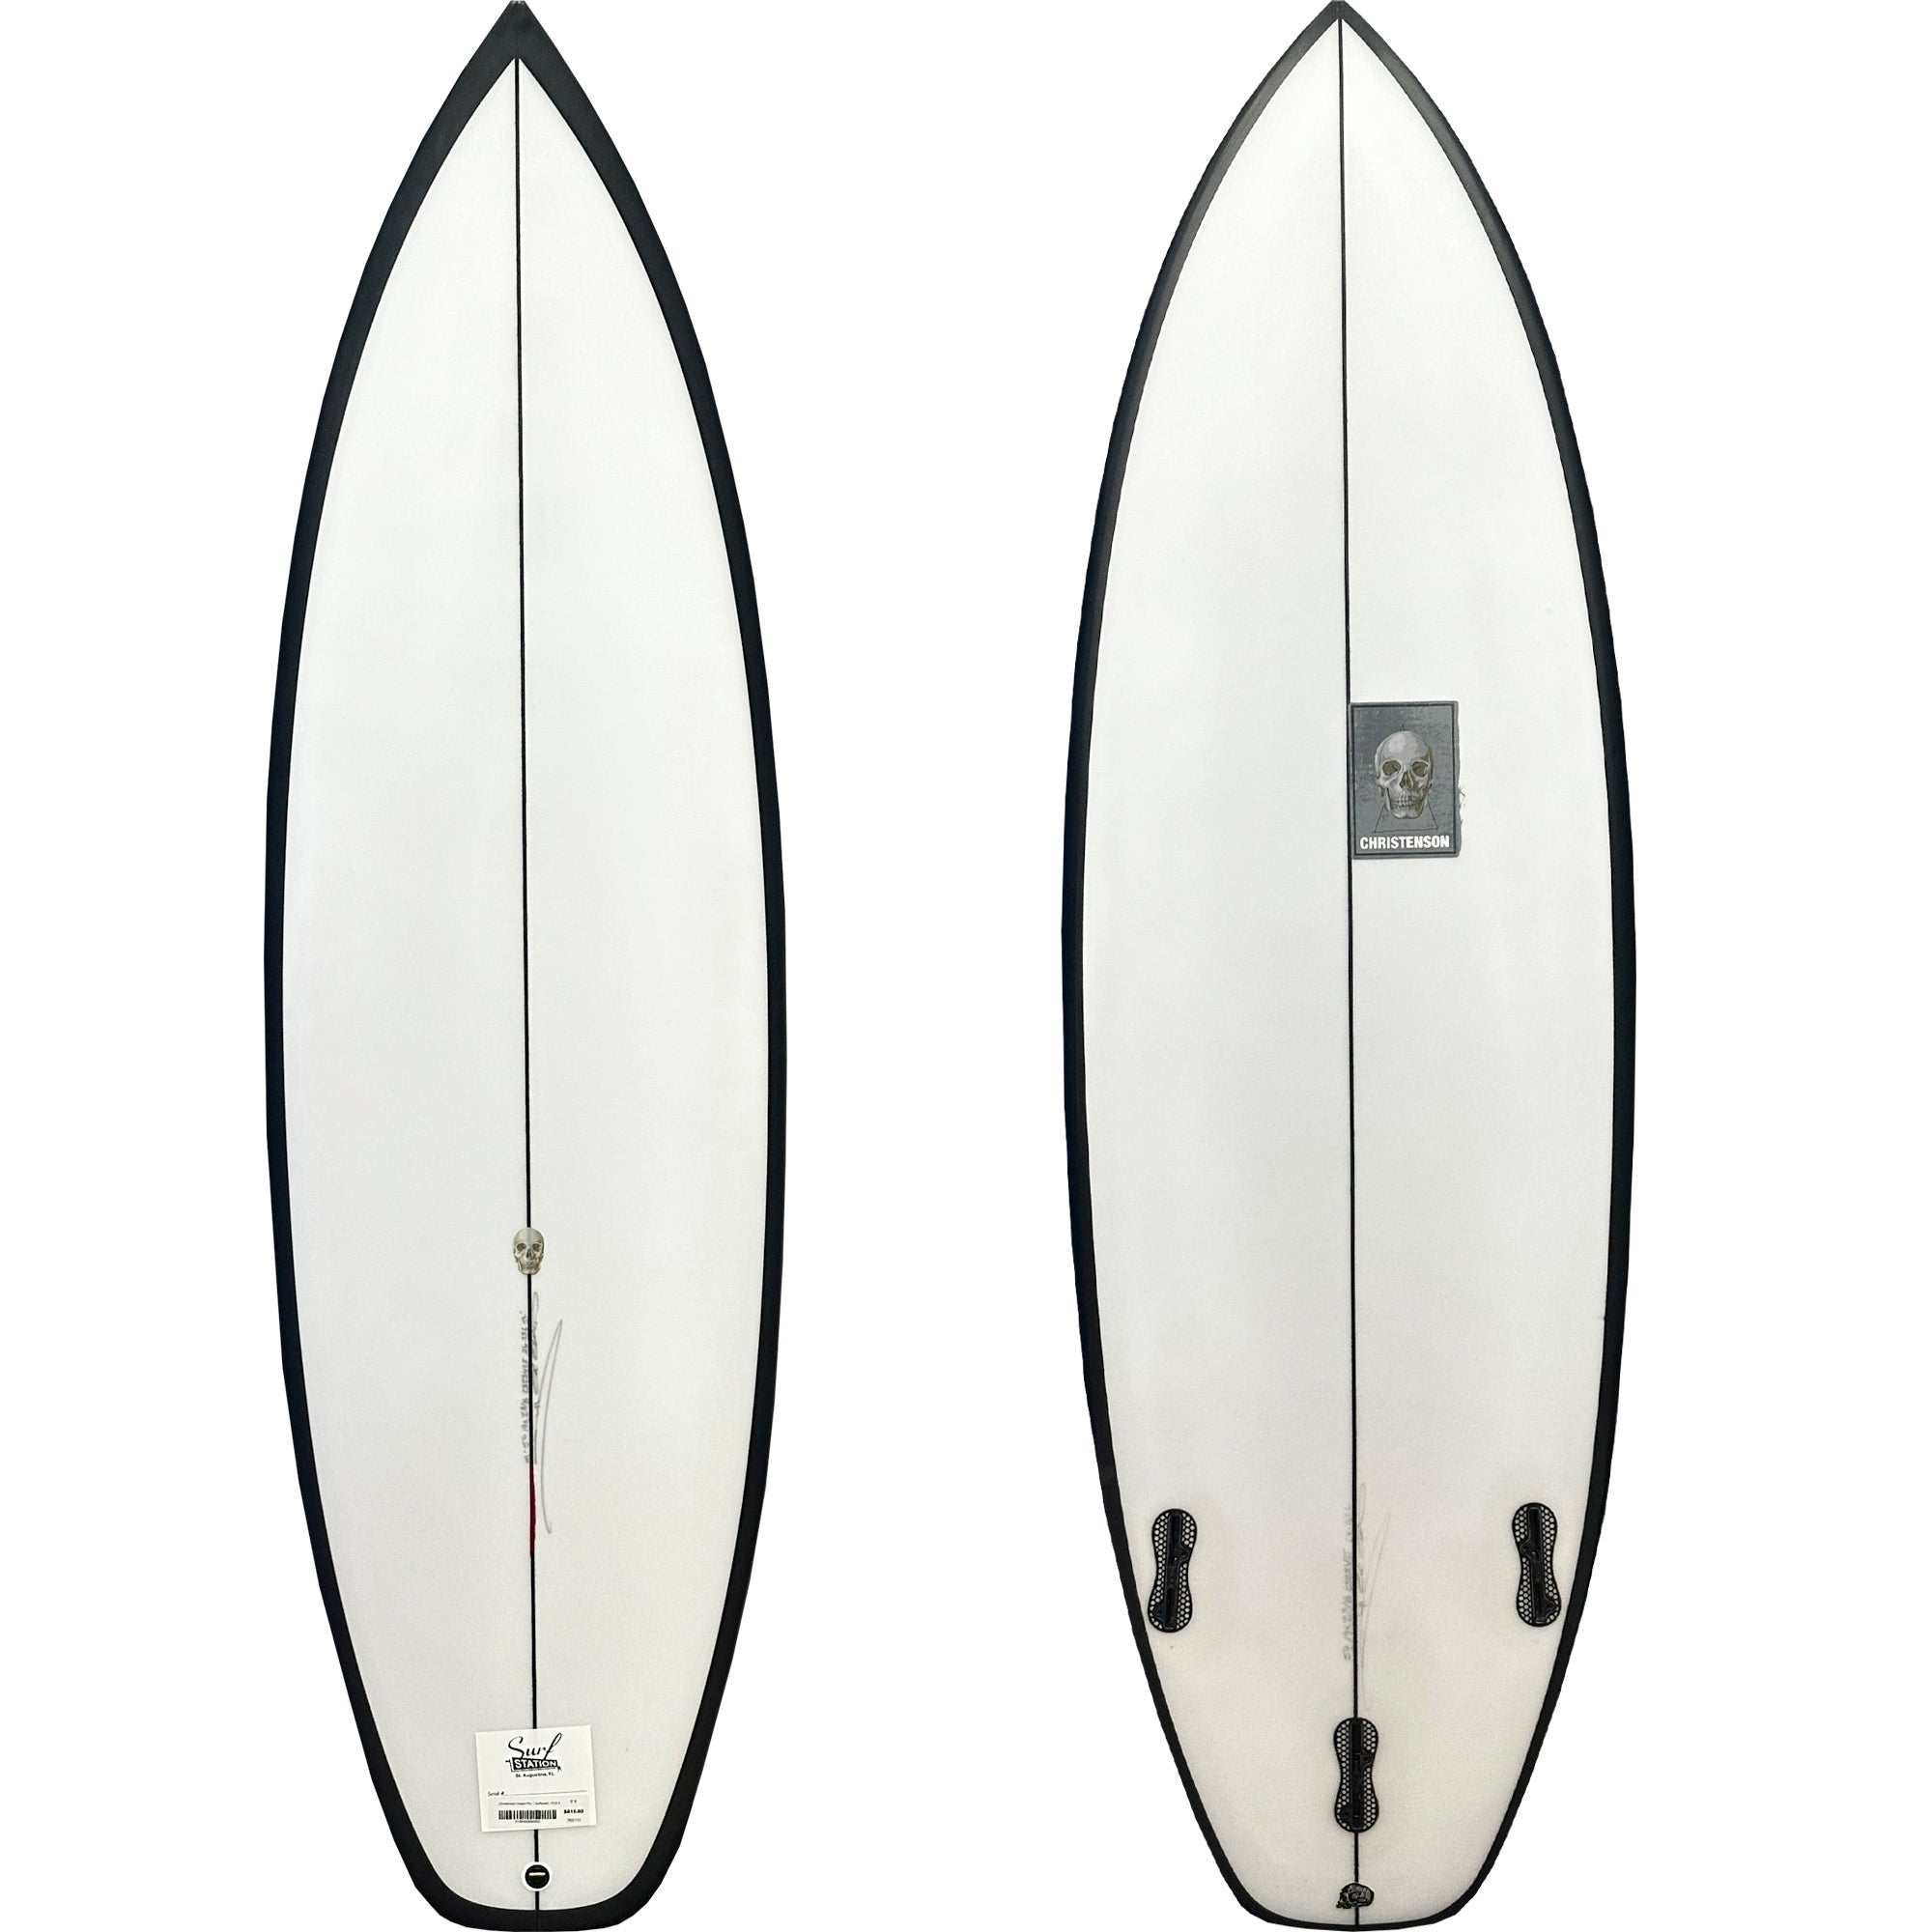 Christenson Ocean Pro 1 Surfboard - FCS II